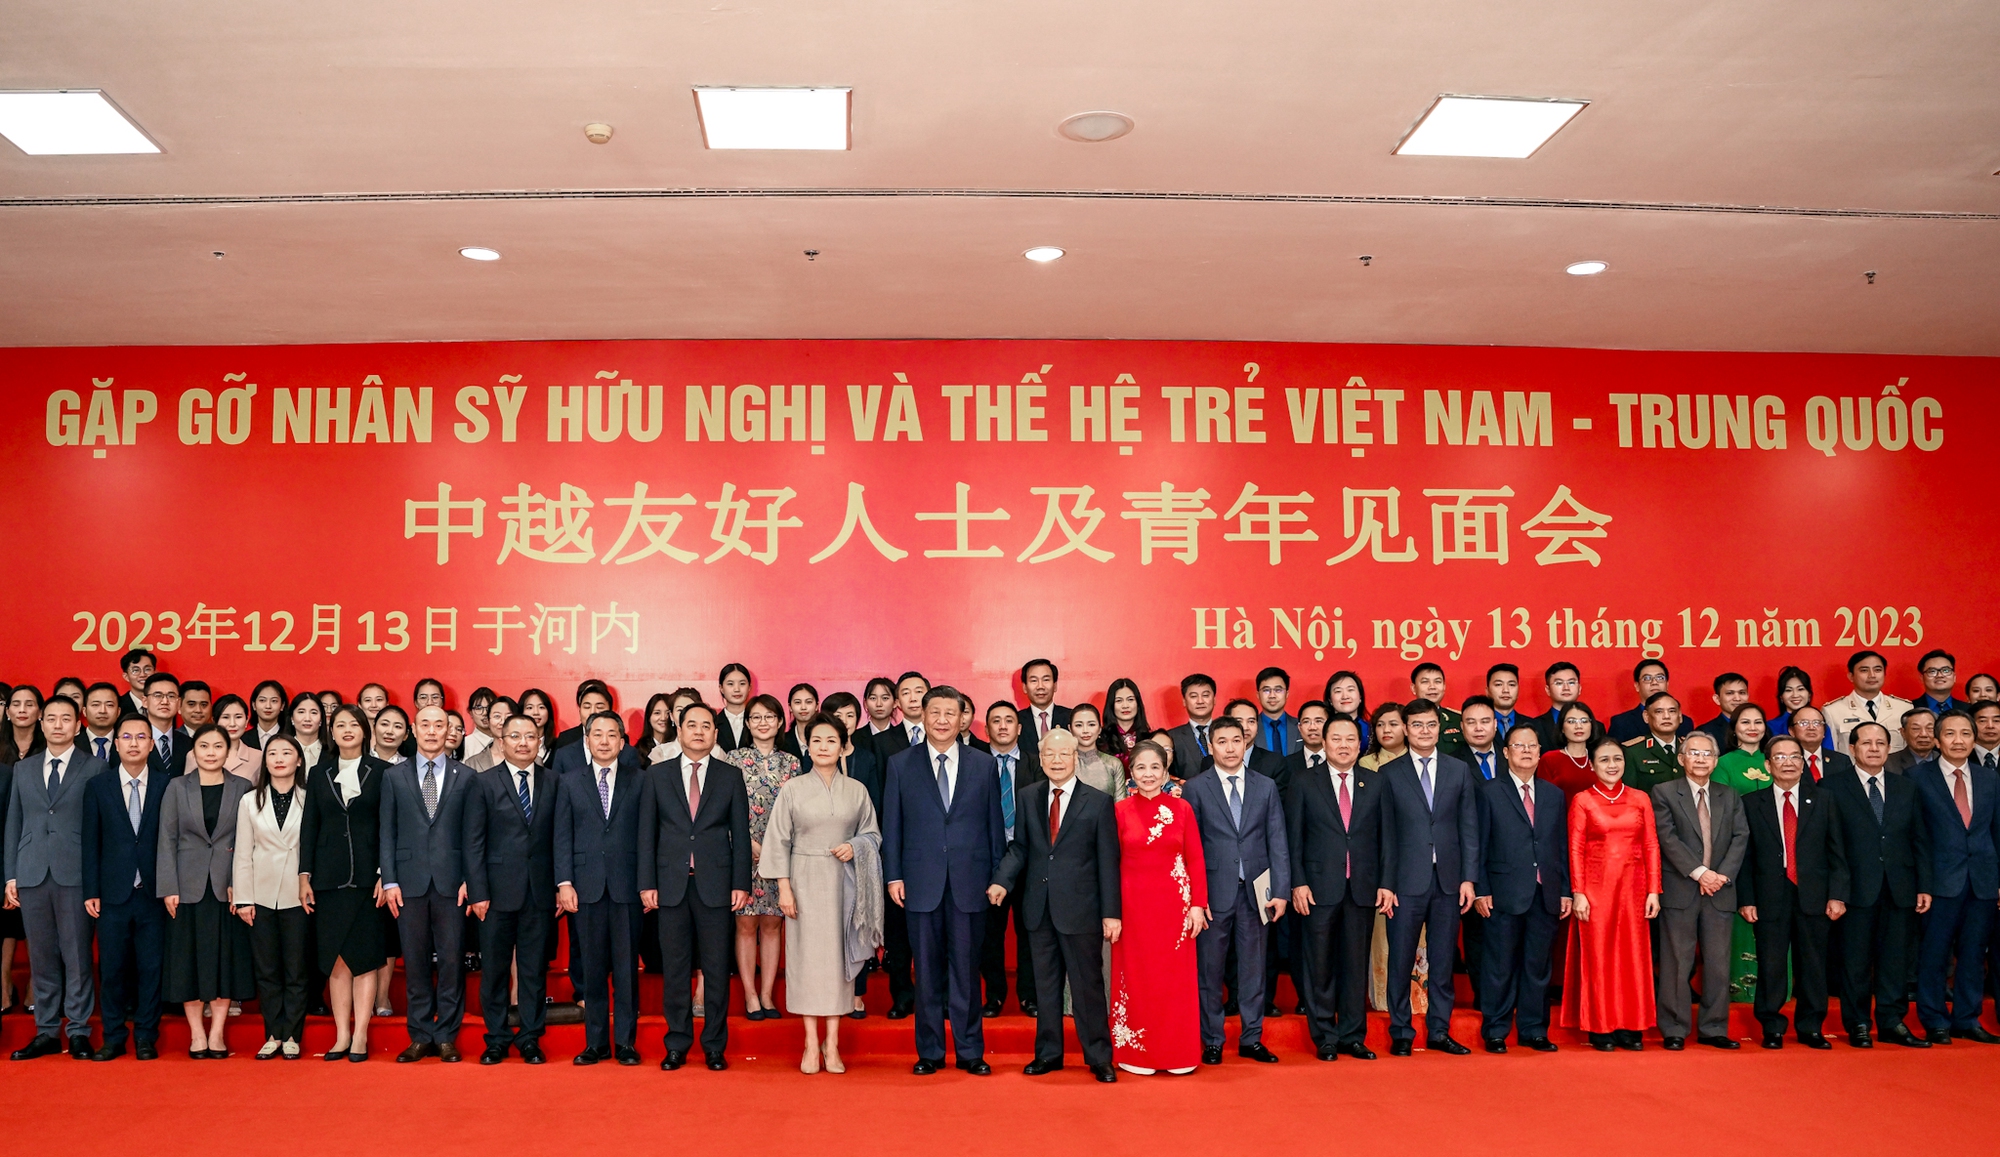 Tổng Bí thư Nguyễn Phú Trọng và Tổng Bí thư, Chủ tịch nước Trung Quốc gặp gỡ nhân sỹ hữu nghị và thế hệ trẻ Việt-Trung - Ảnh 2.